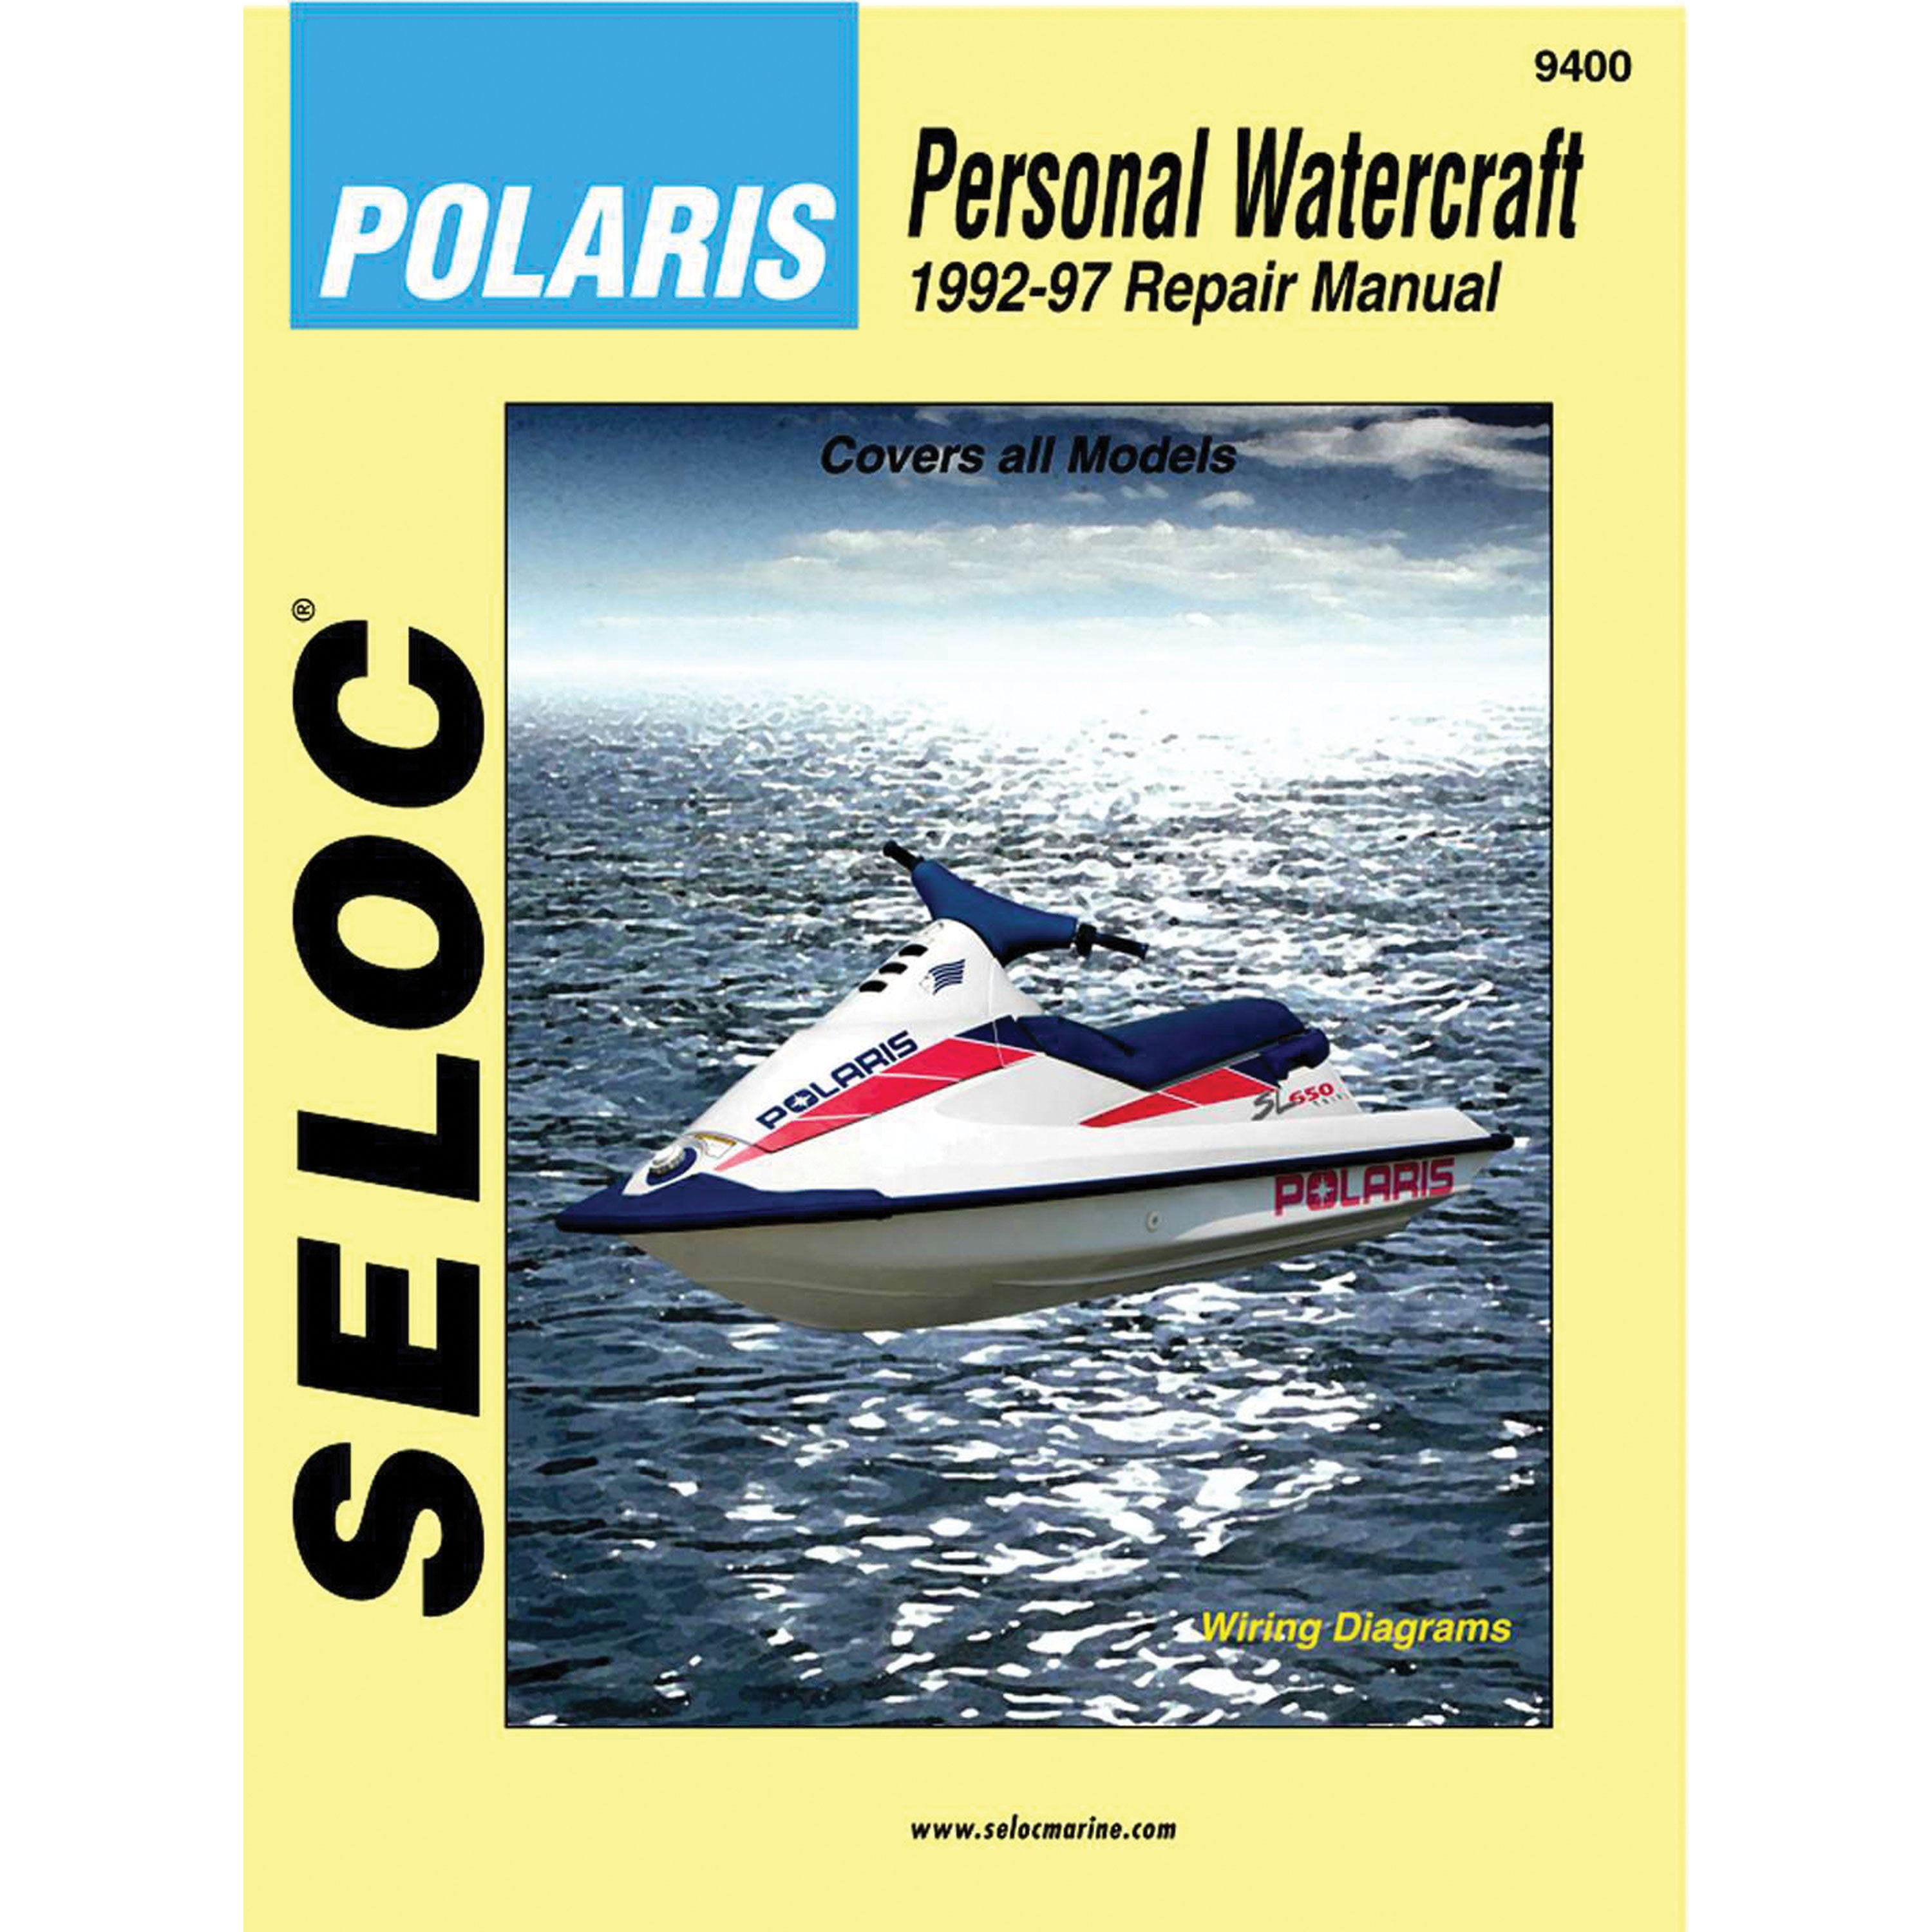 Sierra 18-09400 Seloc Repair Manual for Polaris Personal Watercraft - 1992-1997